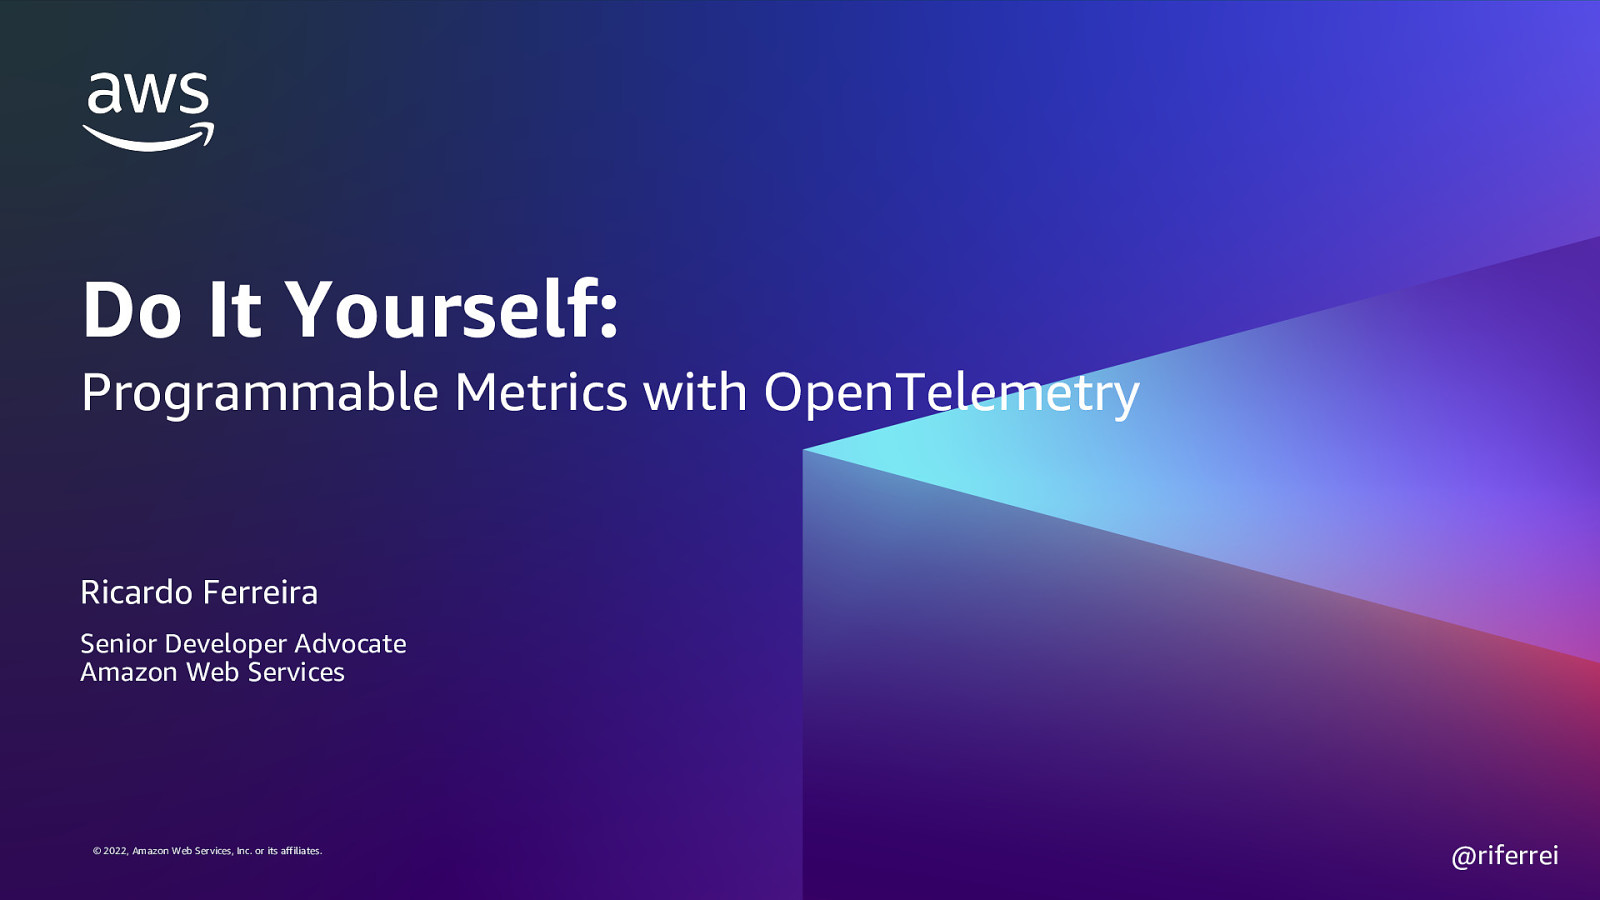 Do It Yourself: Programmable Metrics using OpenTelemetry